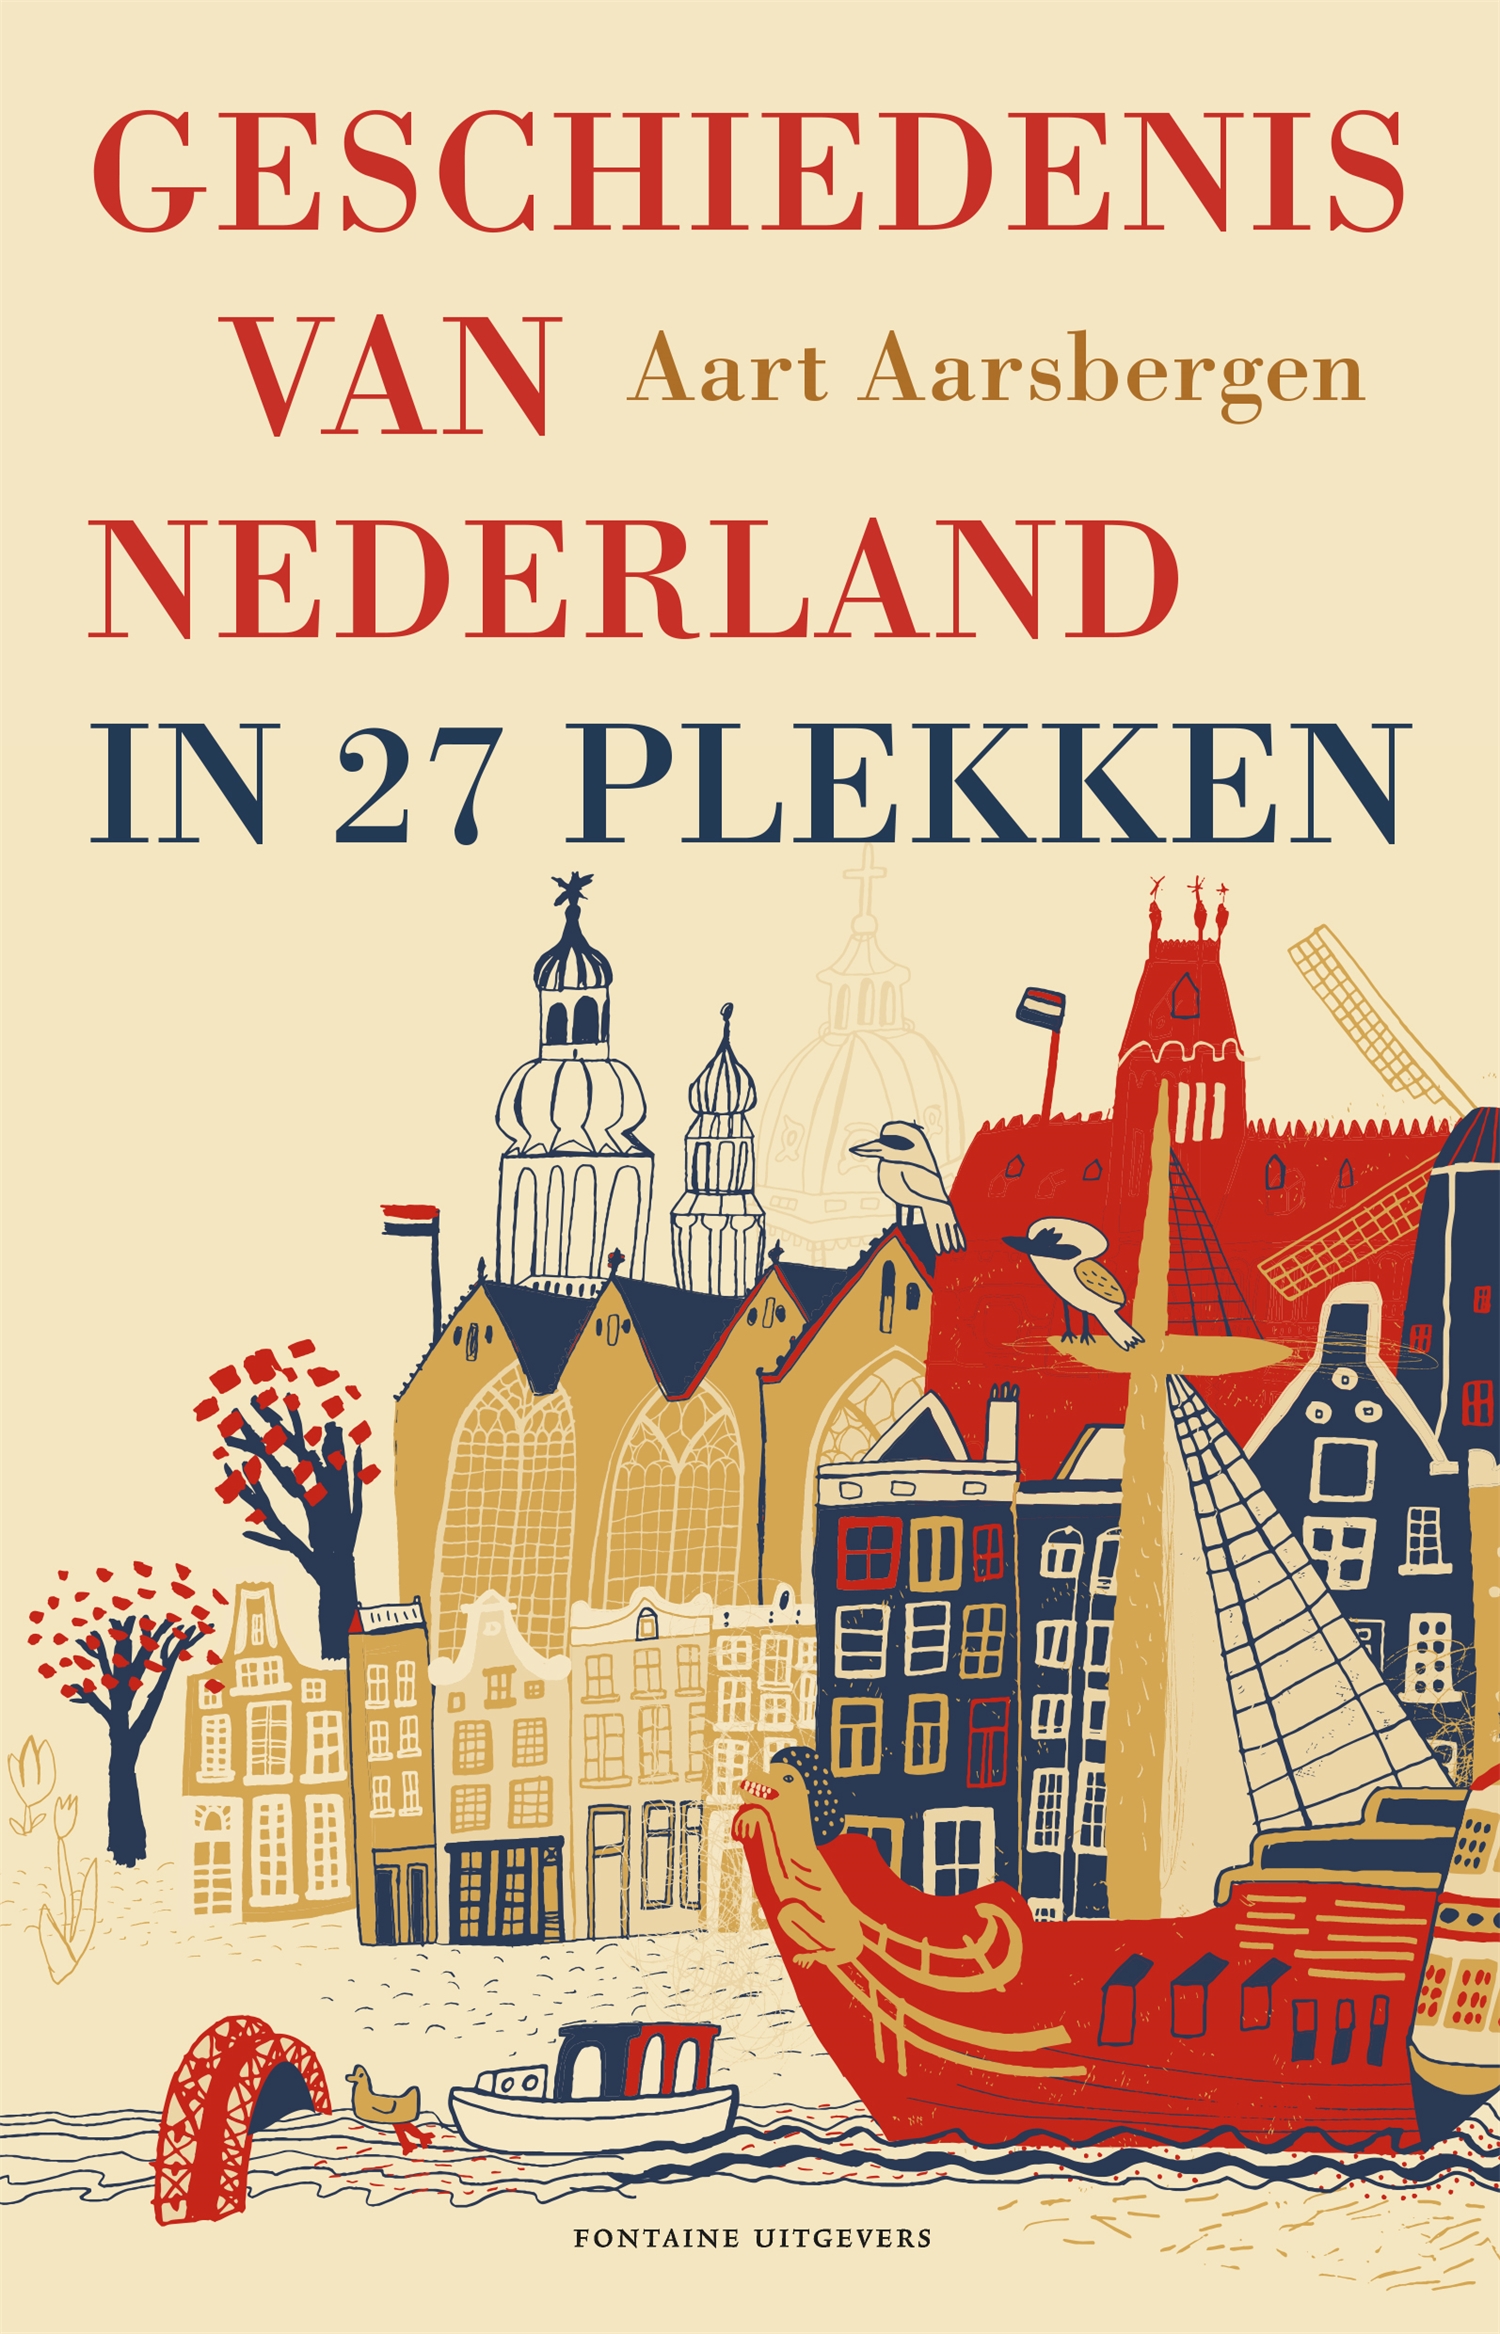 Geschiedenis van Nederland in 27 plekken